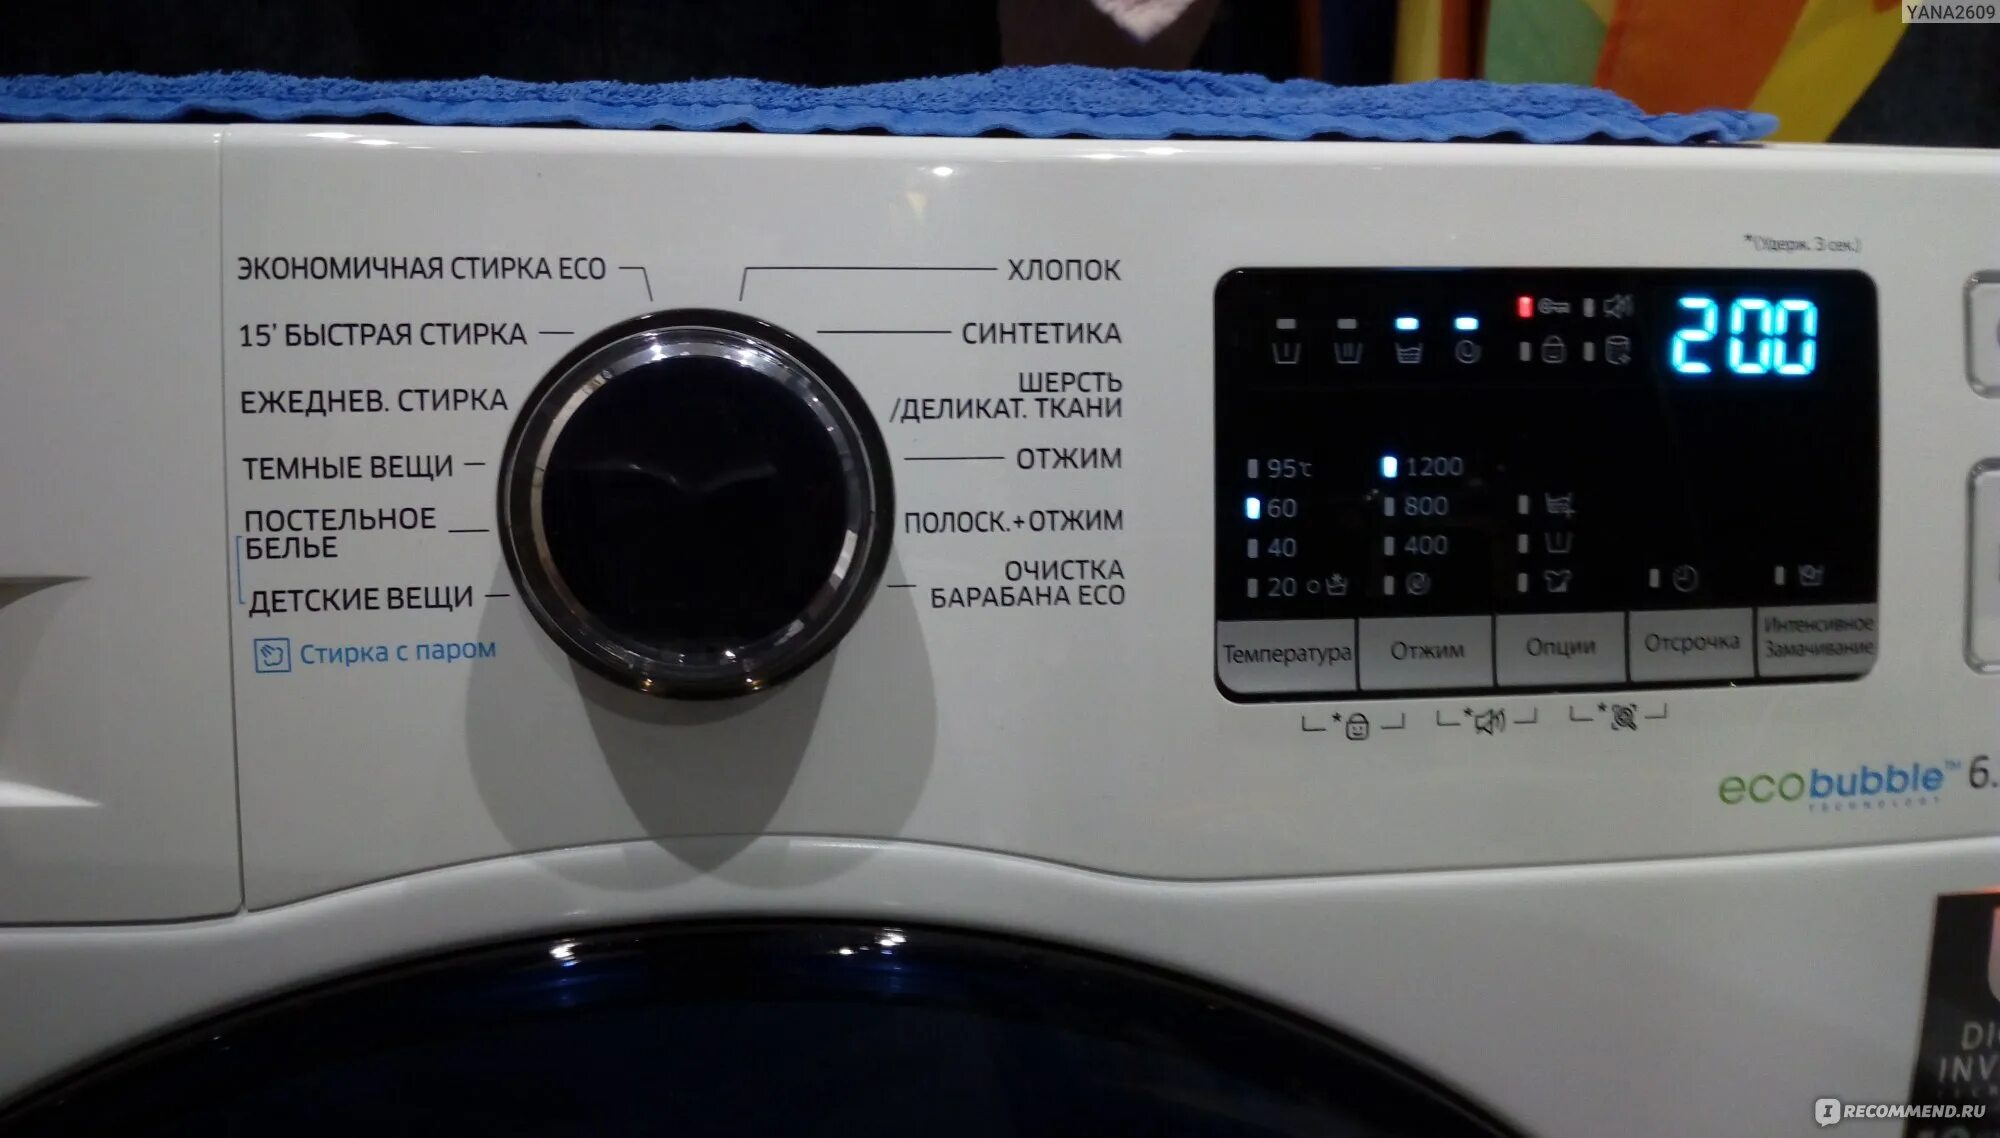 Машинка стиральная самсунг время стирки. Автомат стиральная машина Eco Bubble Samsung. Стиральная машинка самсунг ww62j30q0lw. Стиральная машинка самсунг wf1802wfvs значок очистки барабана. Стиральная машинка самсунг Eco Bubble стирка паром.